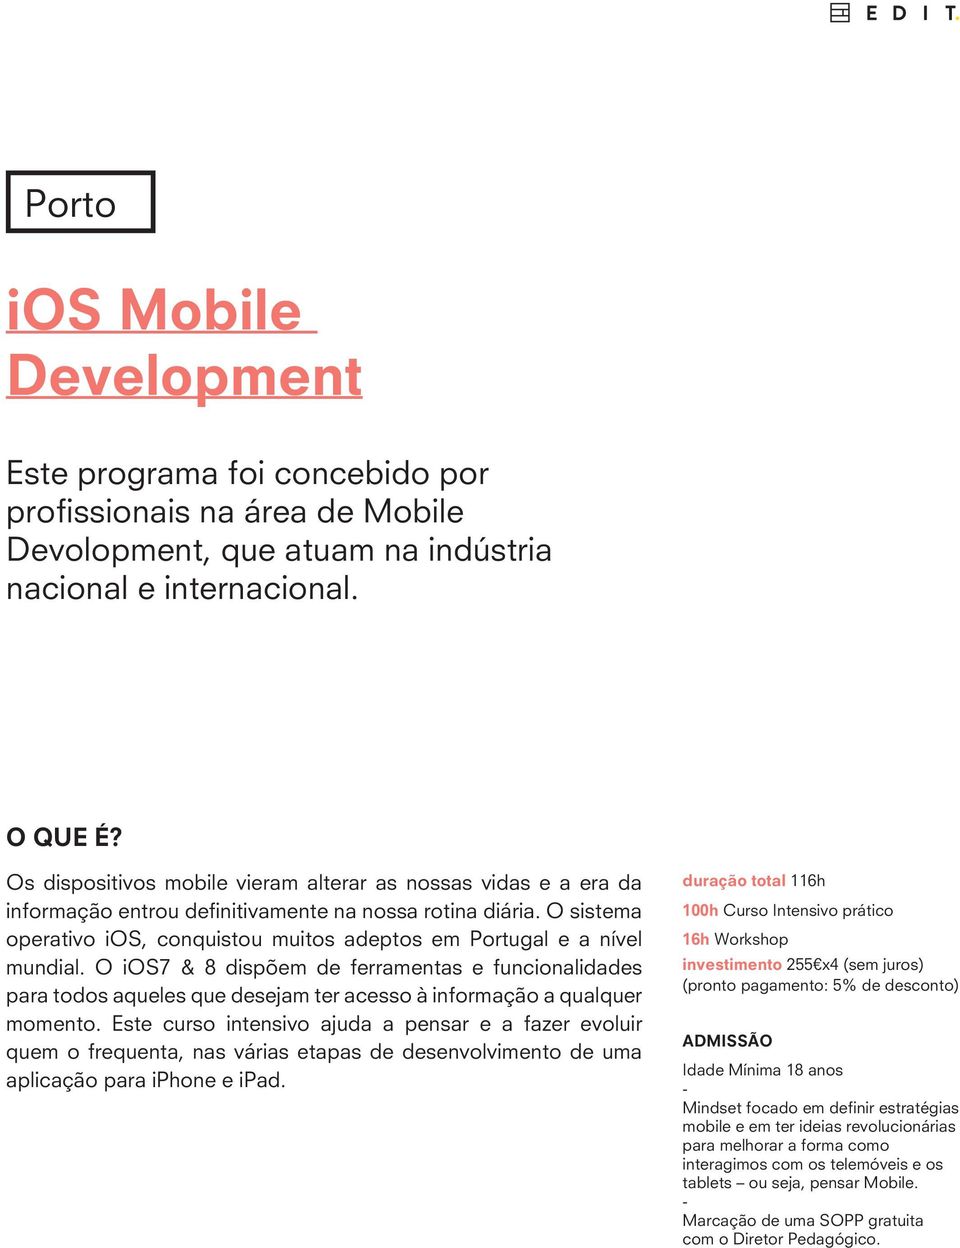 O sistema operativo ios, conquistou muitos adeptos em Portugal e a nível mundial.